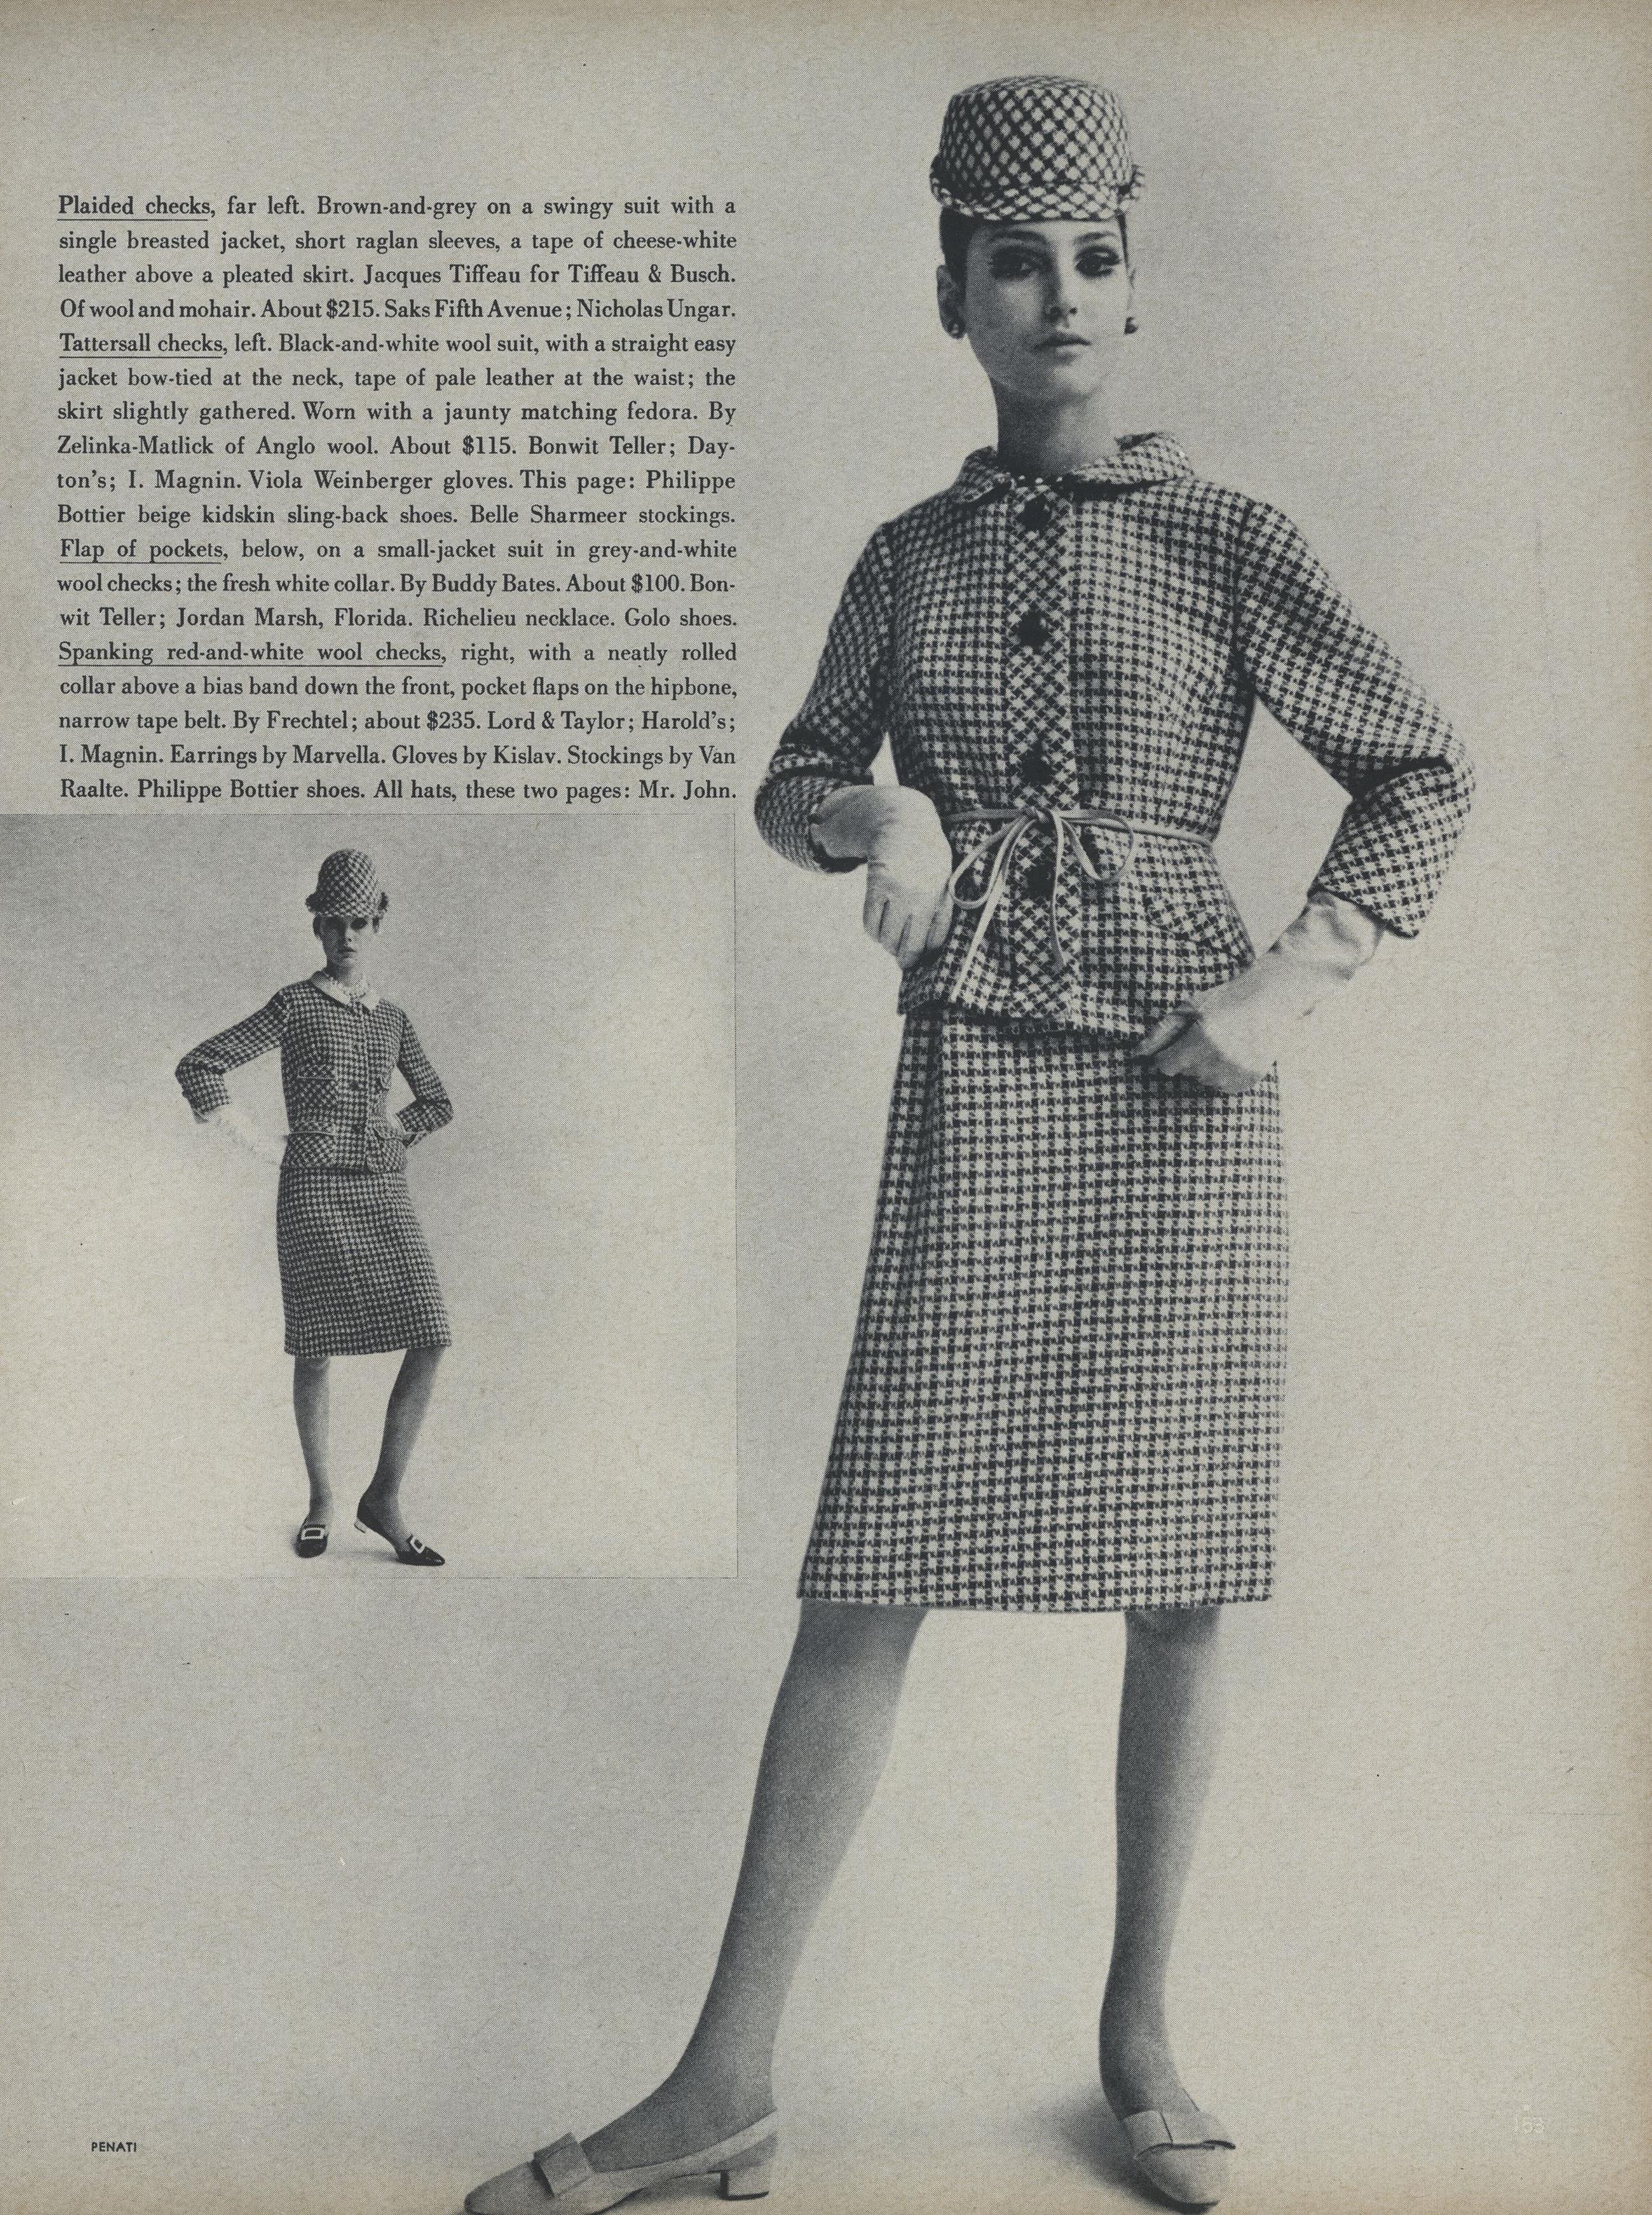 American Penati US Vogue February 1 st 1965 08